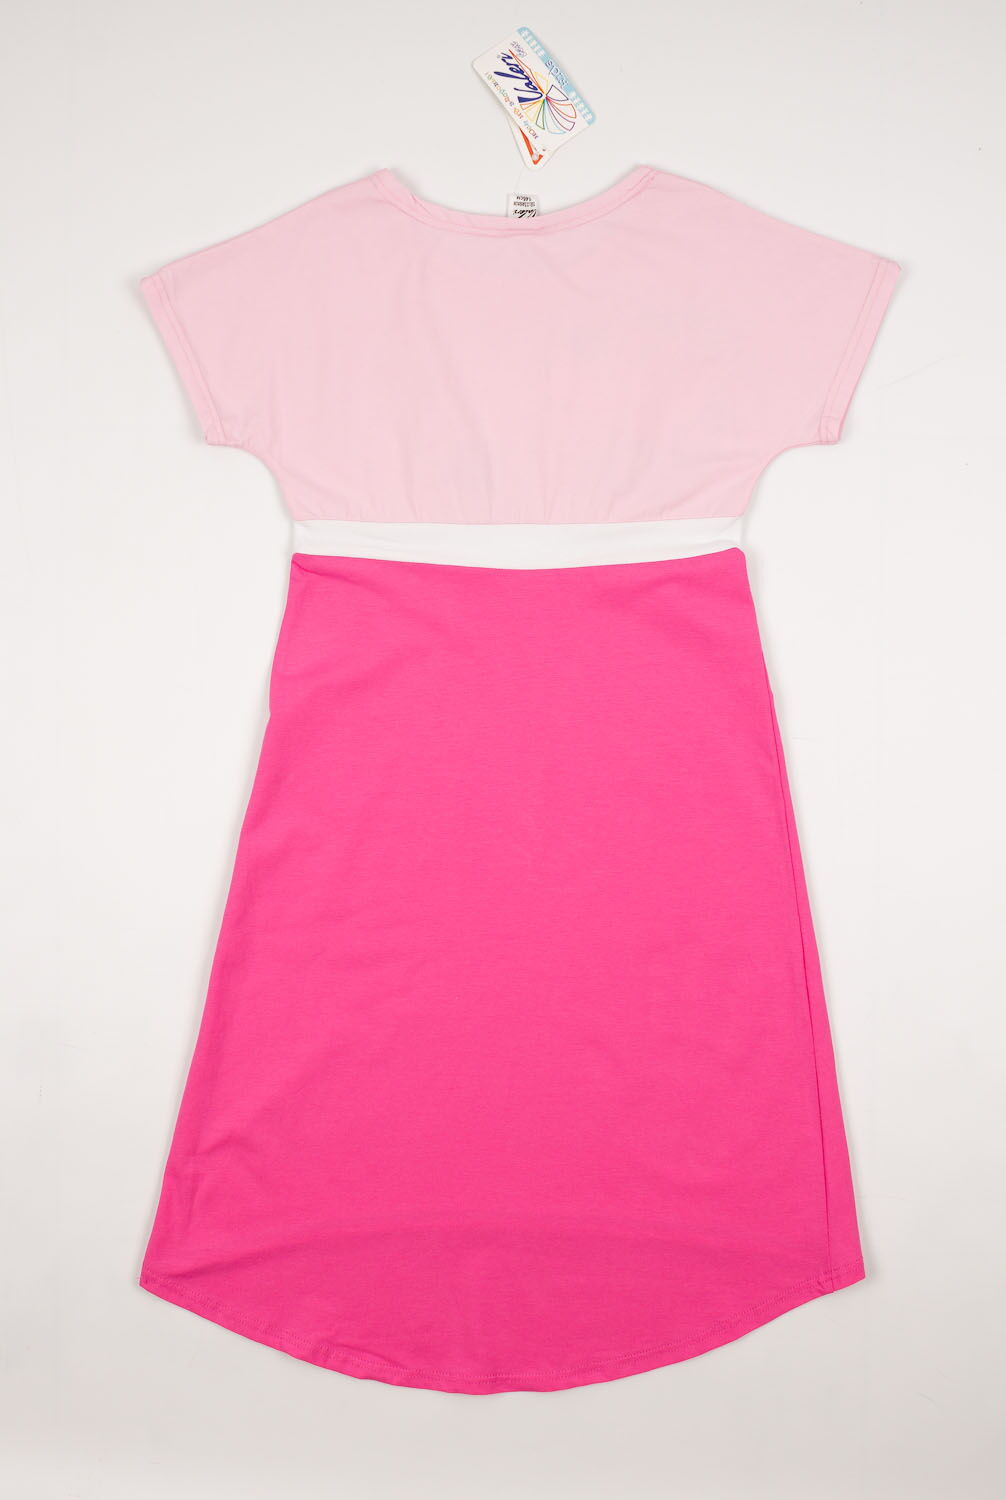 Платье для девочки Valeri tex розовое 1815-55-042 - фото